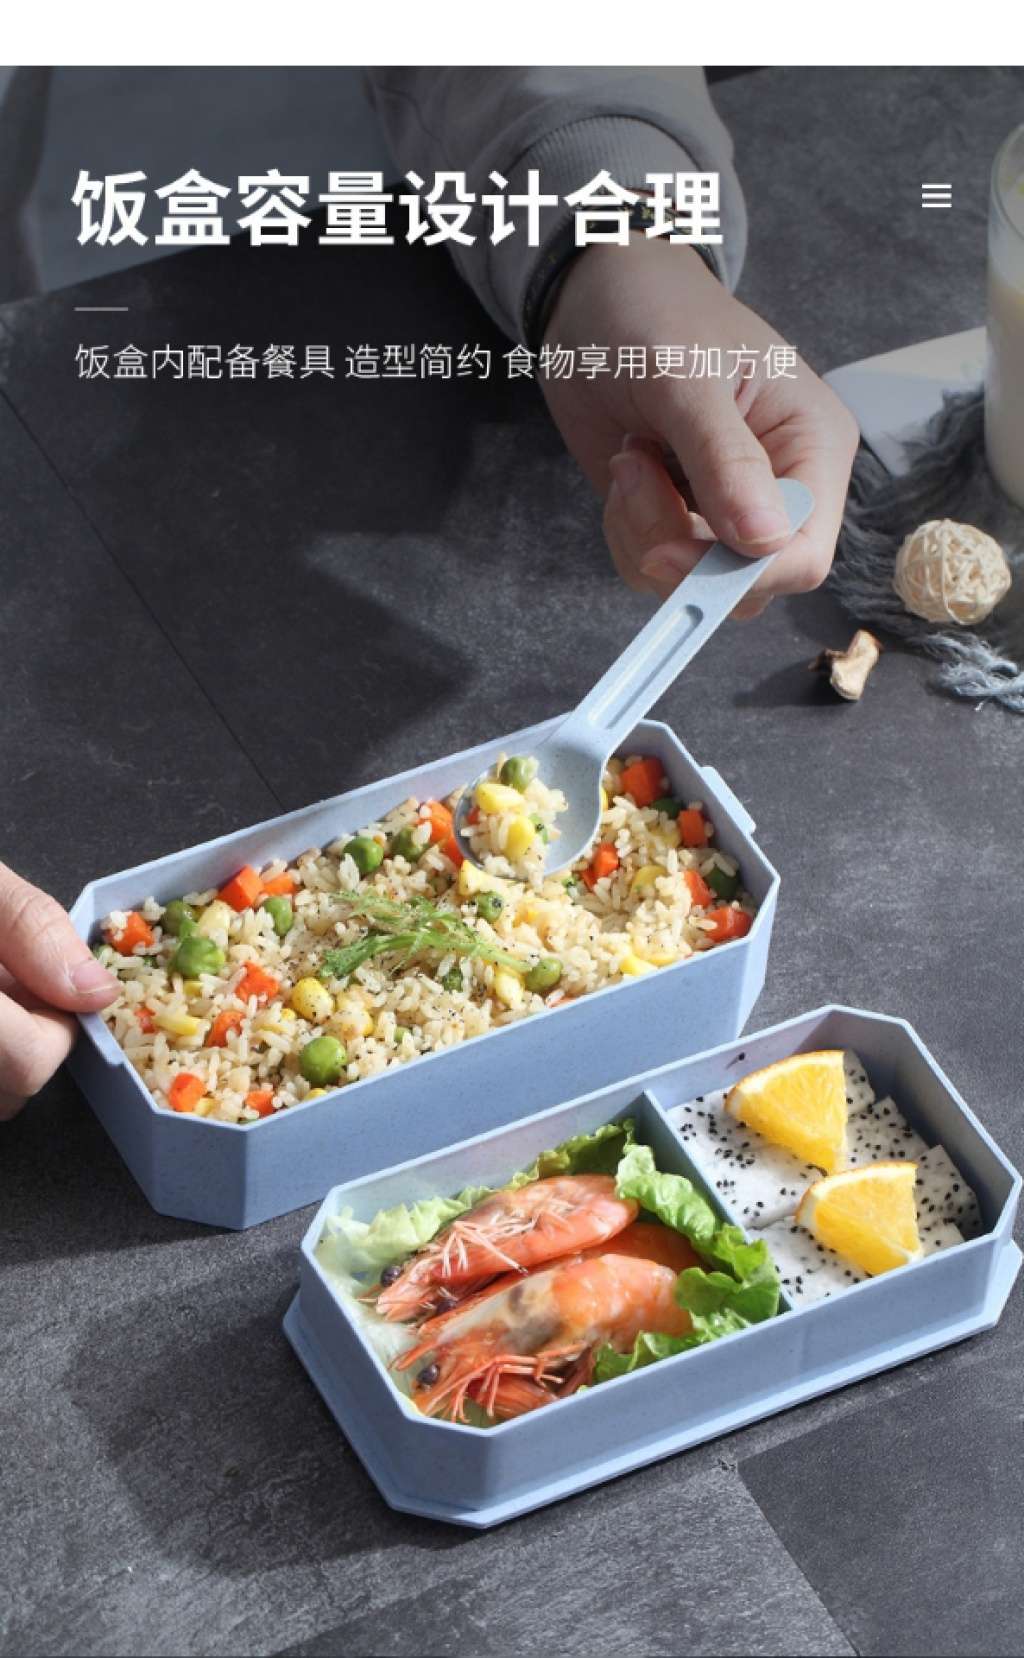 S42-2521创意日式秸秆双层饭盒便当盒餐具套装餐盒加热健身饭盒详情图14